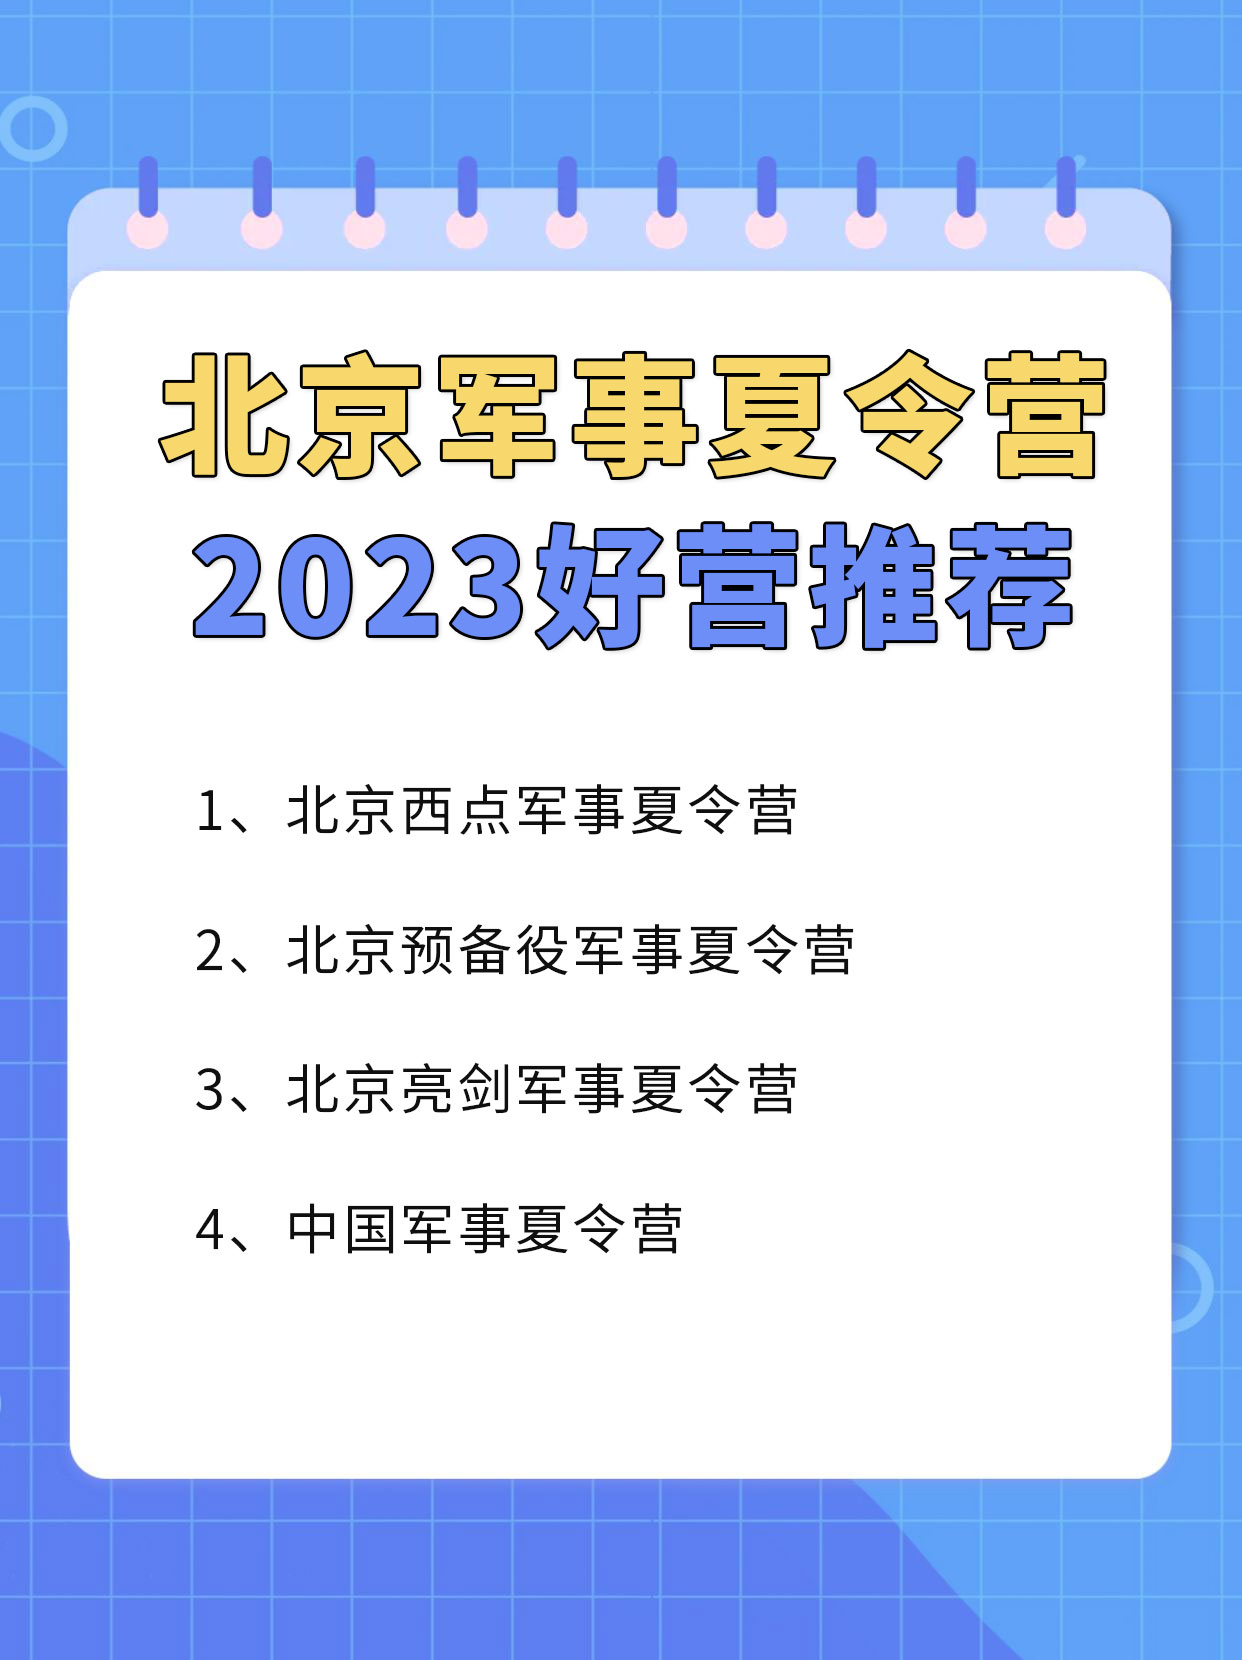 2023北京军事夏令营哪家好？有什么推荐吗？